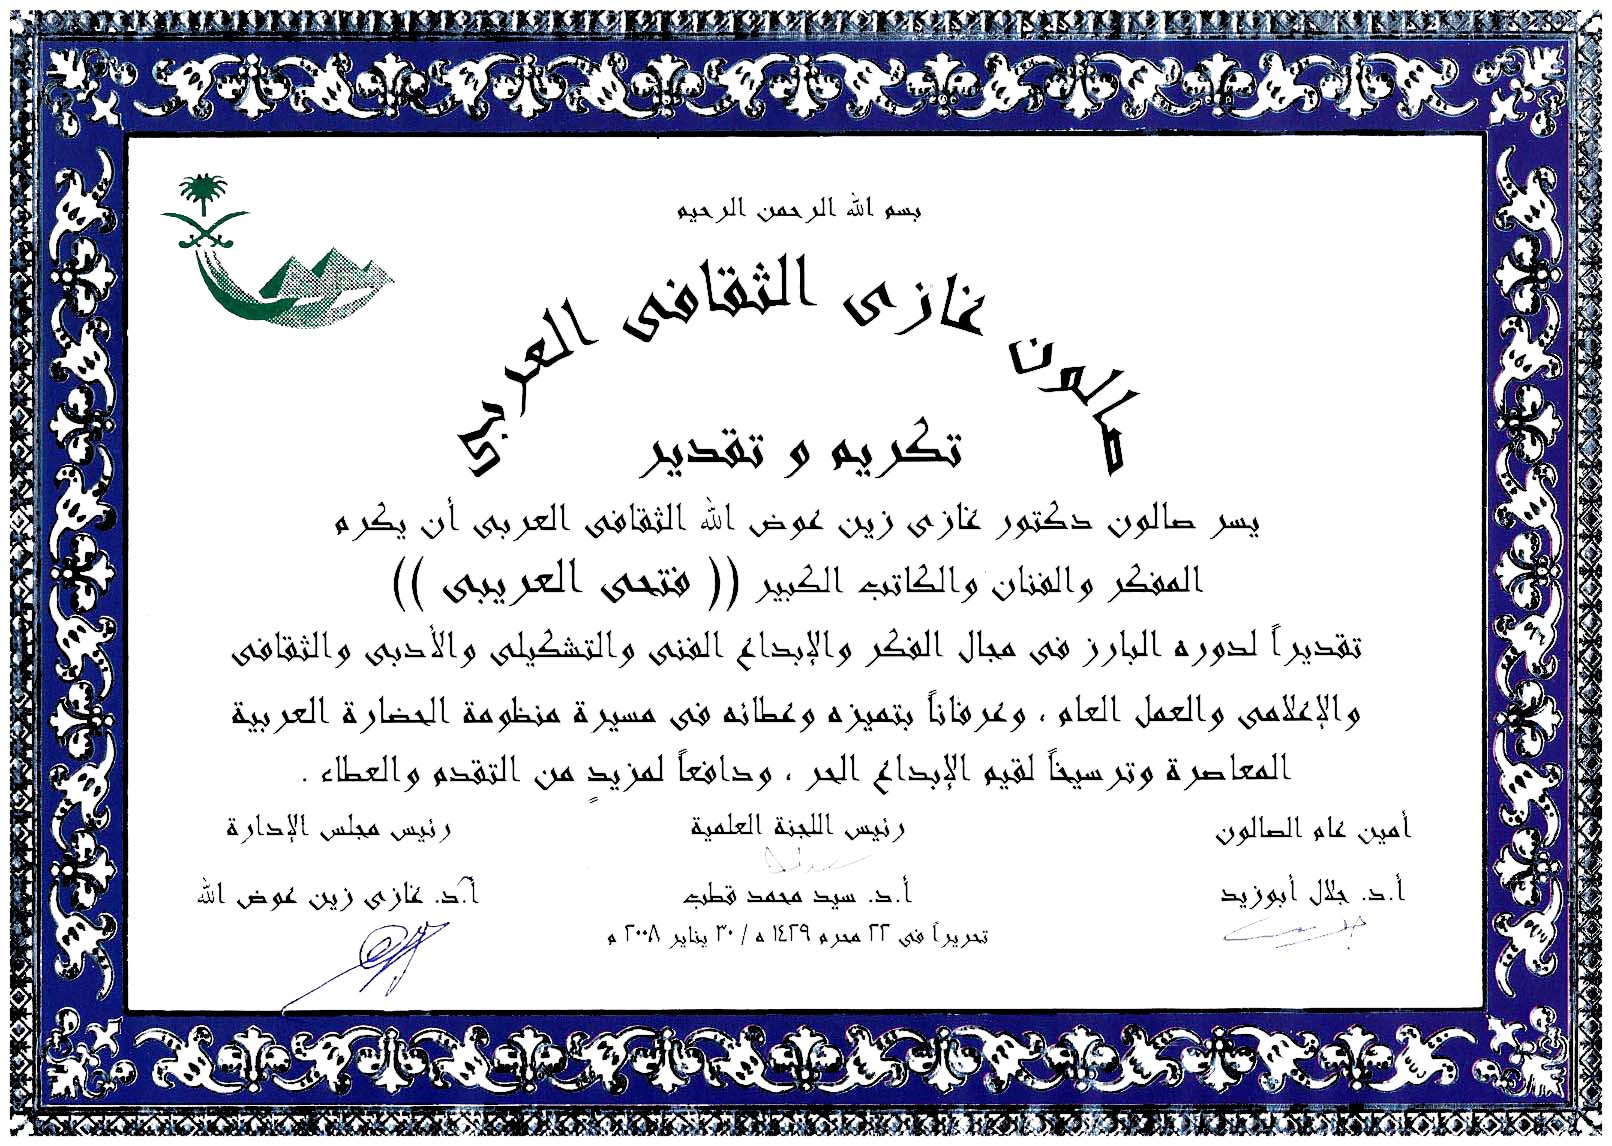 صالون غازي الثقافي العربي بالقاهرة - يكرم الفنان الليبي : فتحي العريبي - بتاريخ 30 يناير 2008